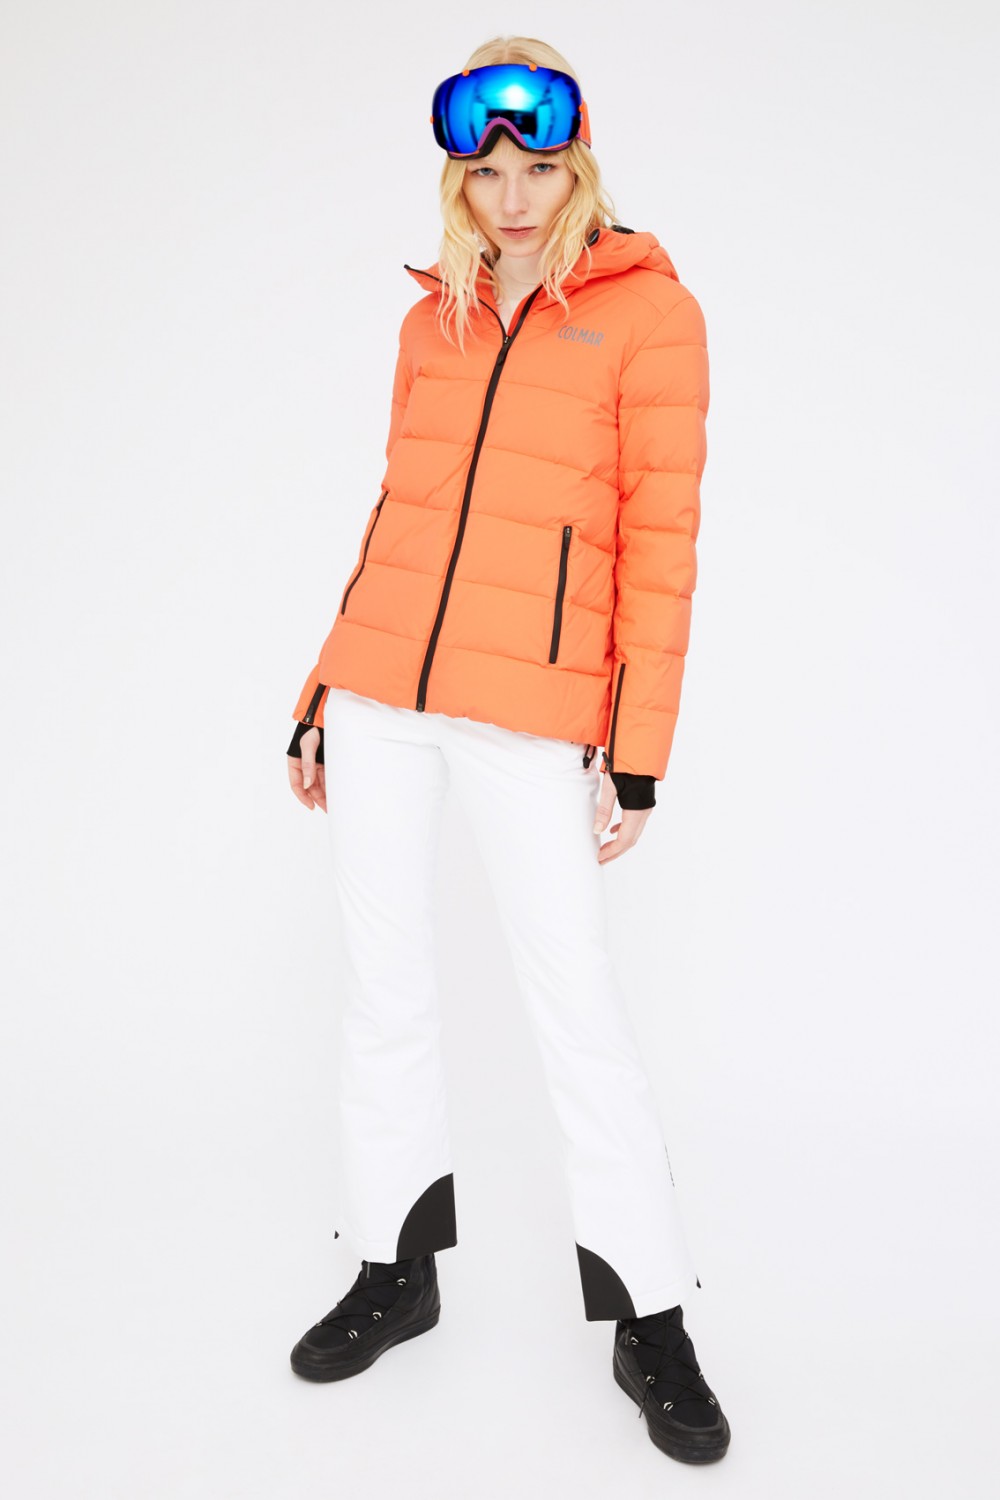 Ski suit with orange jacket